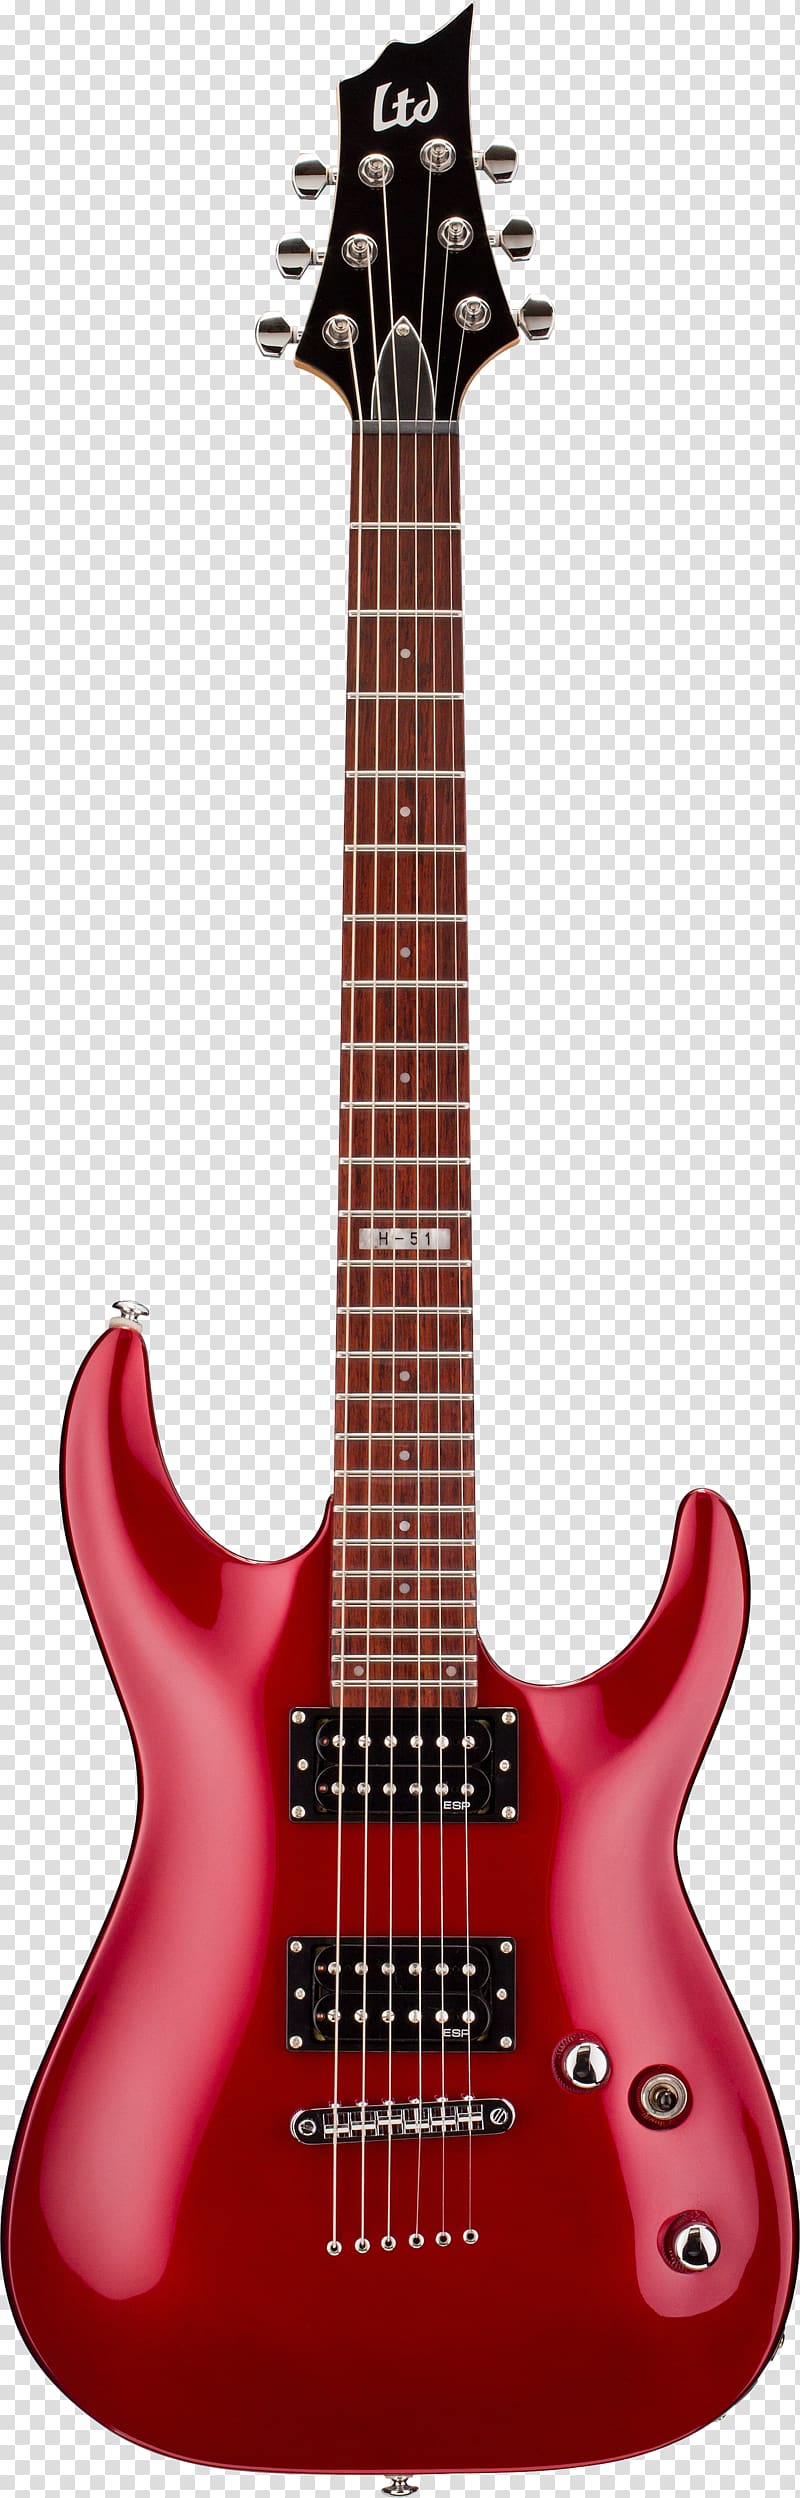 ESP LTD EC-1000 ESP F-10 ESP Guitars Electric guitar, Guitar transparent background PNG clipart